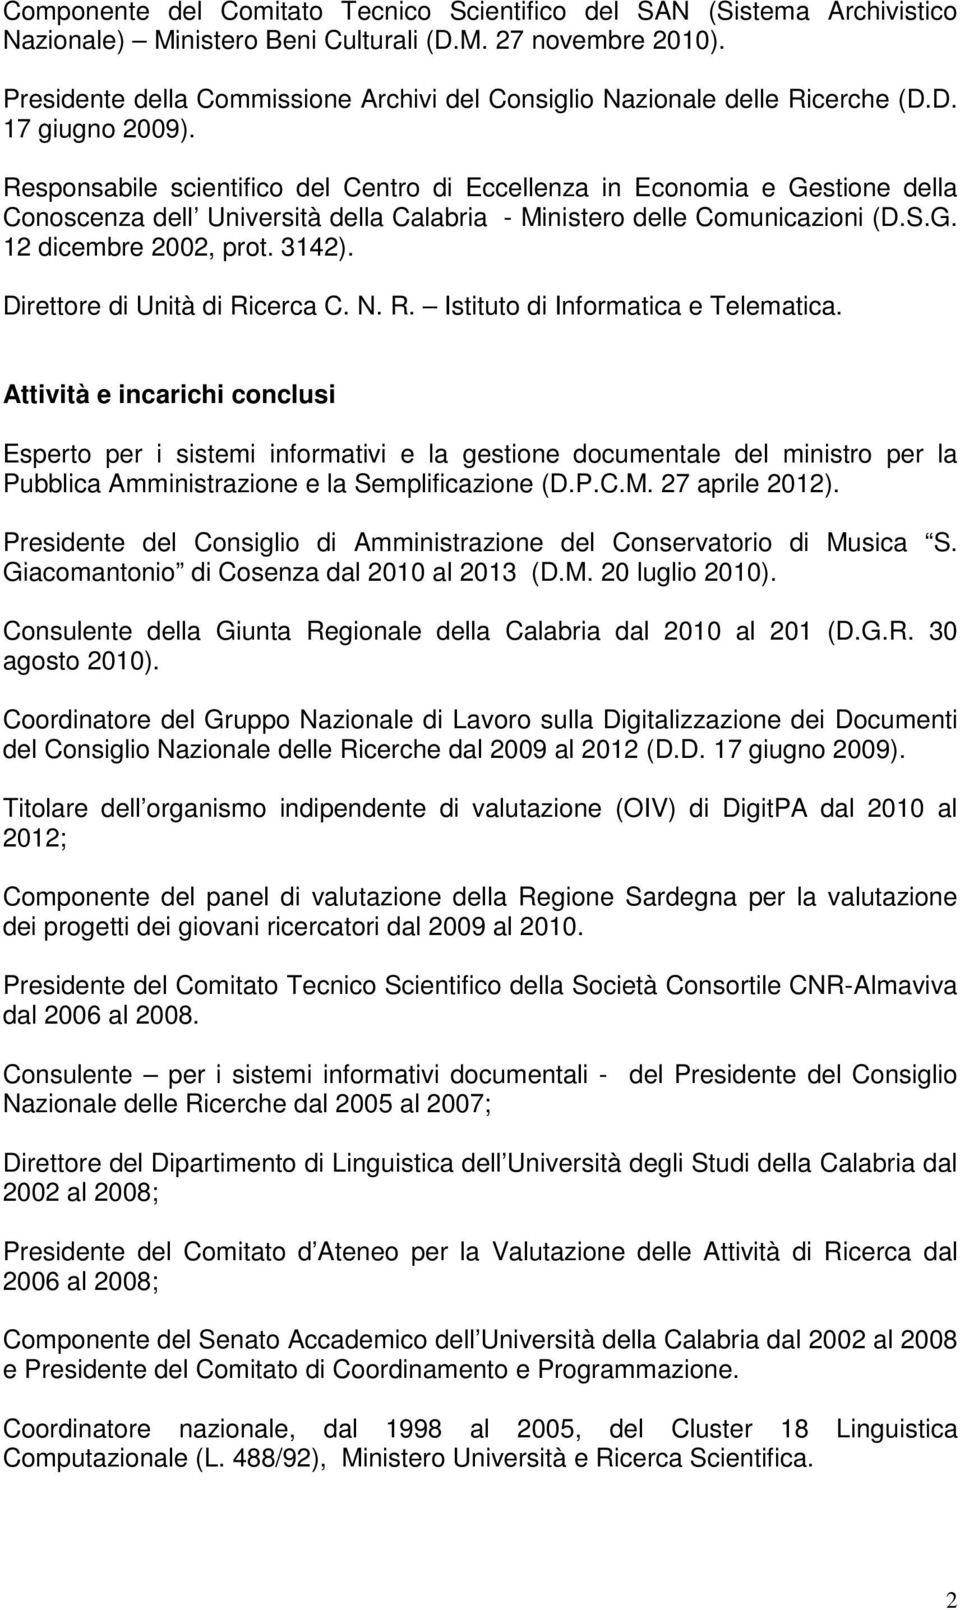 Responsabile scientifico del Centro di Eccellenza in Economia e Gestione della Conoscenza dell Università della Calabria - Ministero delle Comunicazioni (D.S.G. 12 dicembre 2002, prot. 3142).